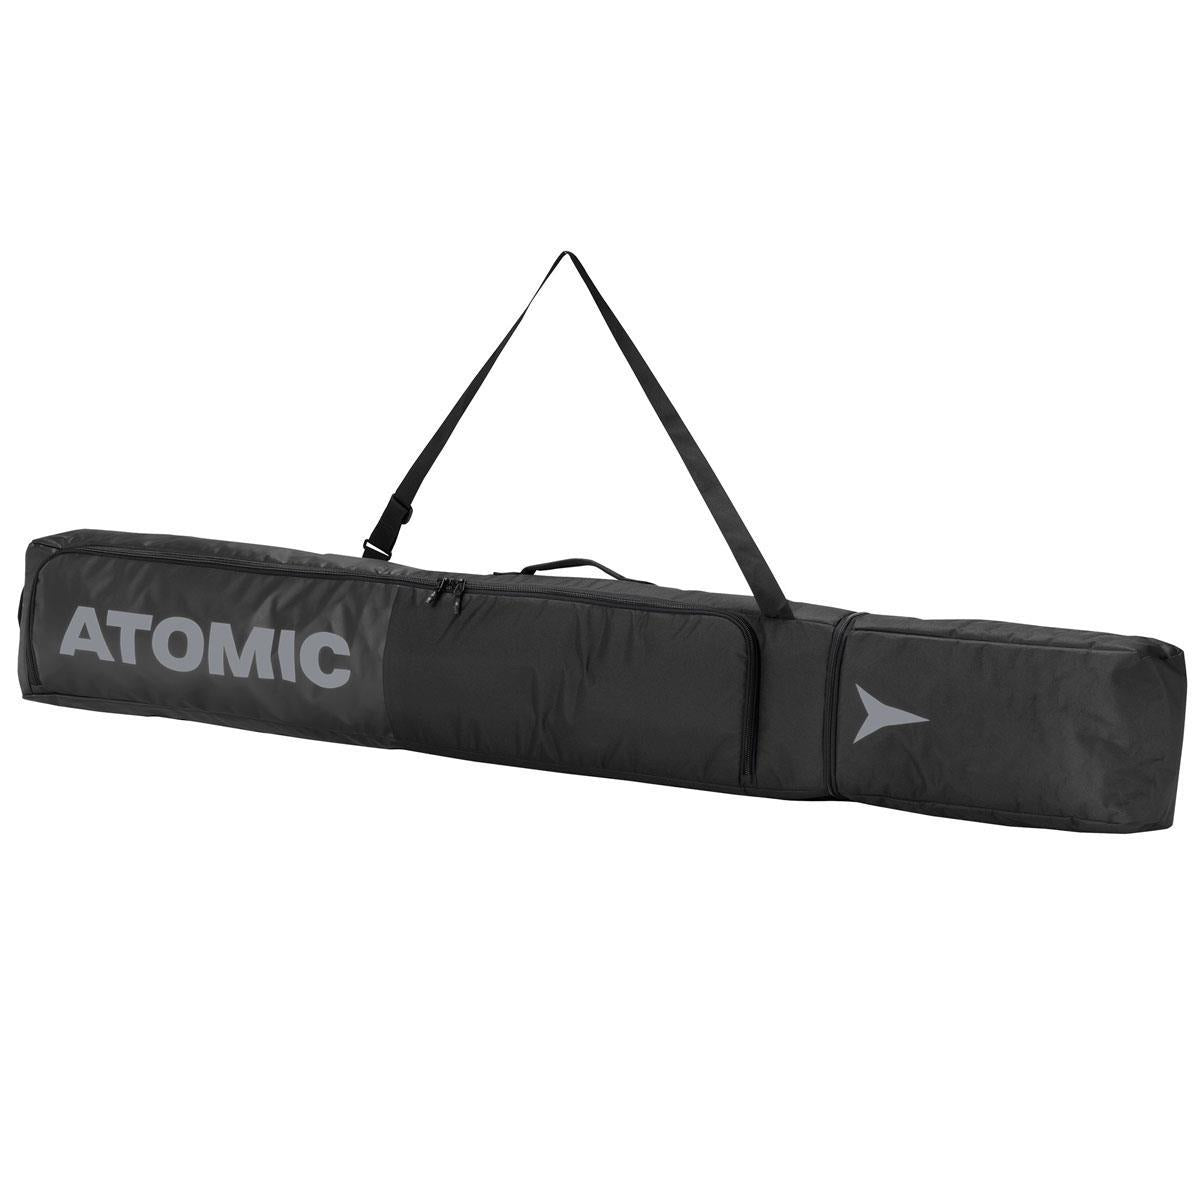 Atomic SKI BAG